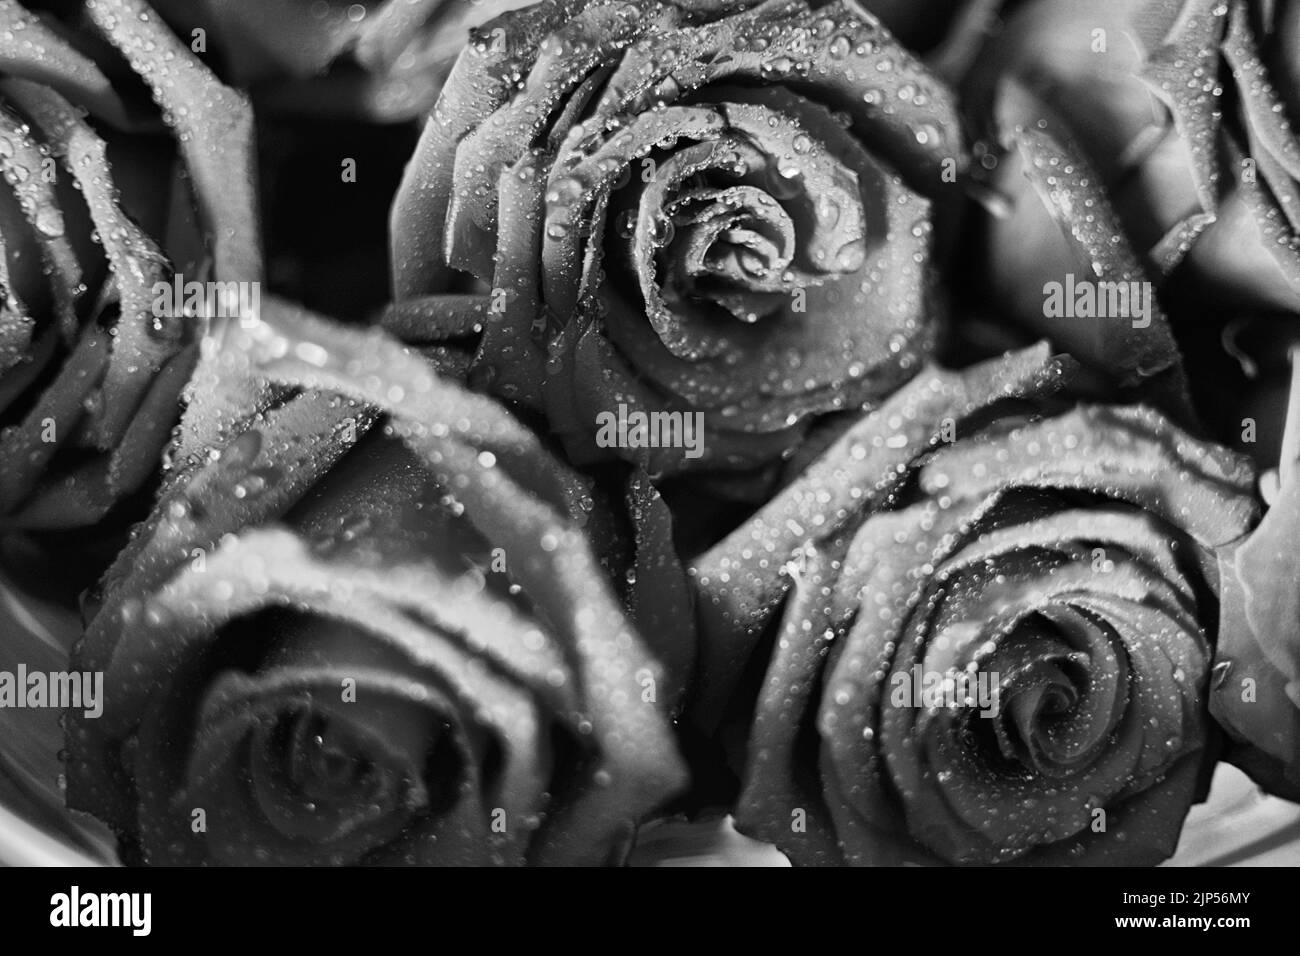 Fond rose noir et blanc, motif floral abstrait grunge naturel, fleur fraîche avec gouttes d'eau, belle texture des pétales de plantes humides, dète nature Banque D'Images